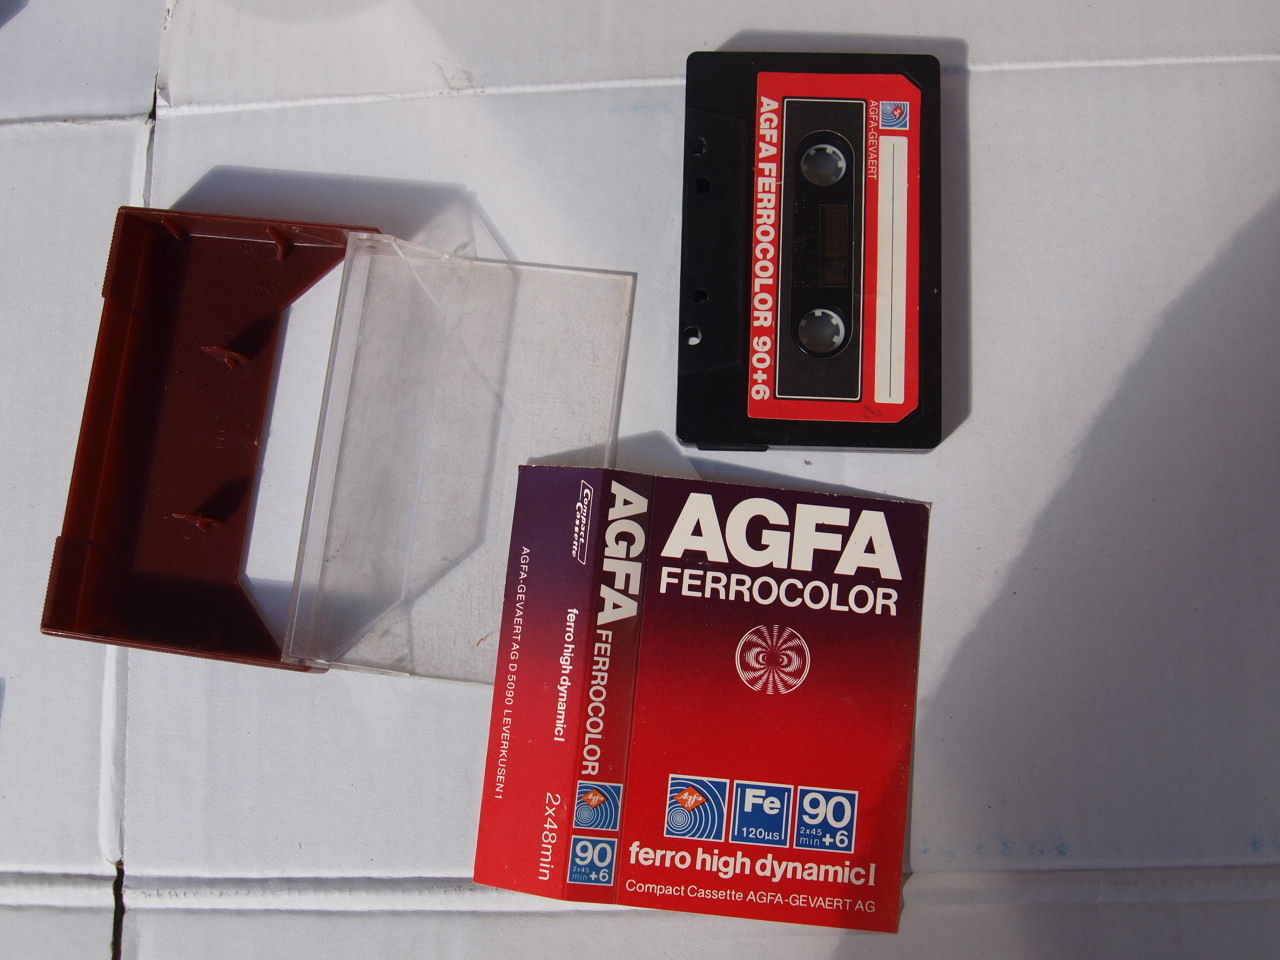 2x Agfa ferrocolor 90+6 Cintas de Audio Cassette Usado-Grabable casos-Azul 